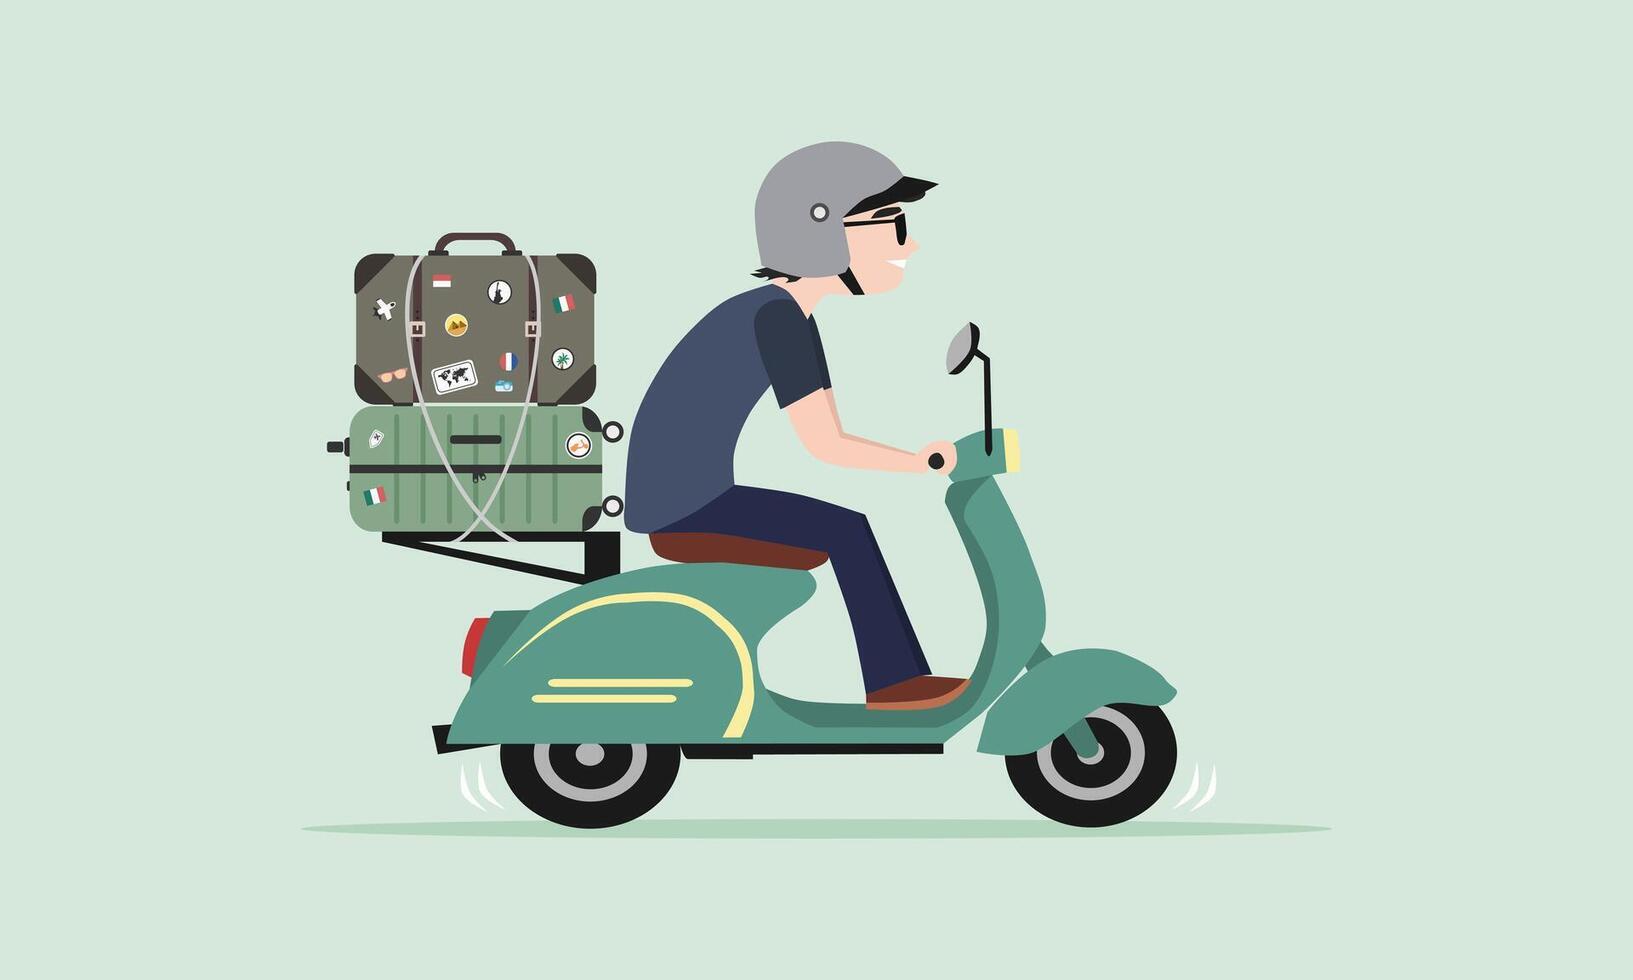 män ridning gammal klassisk skoter med bagage eller resväska. motorcykel touring begrepp. vektor illustration.